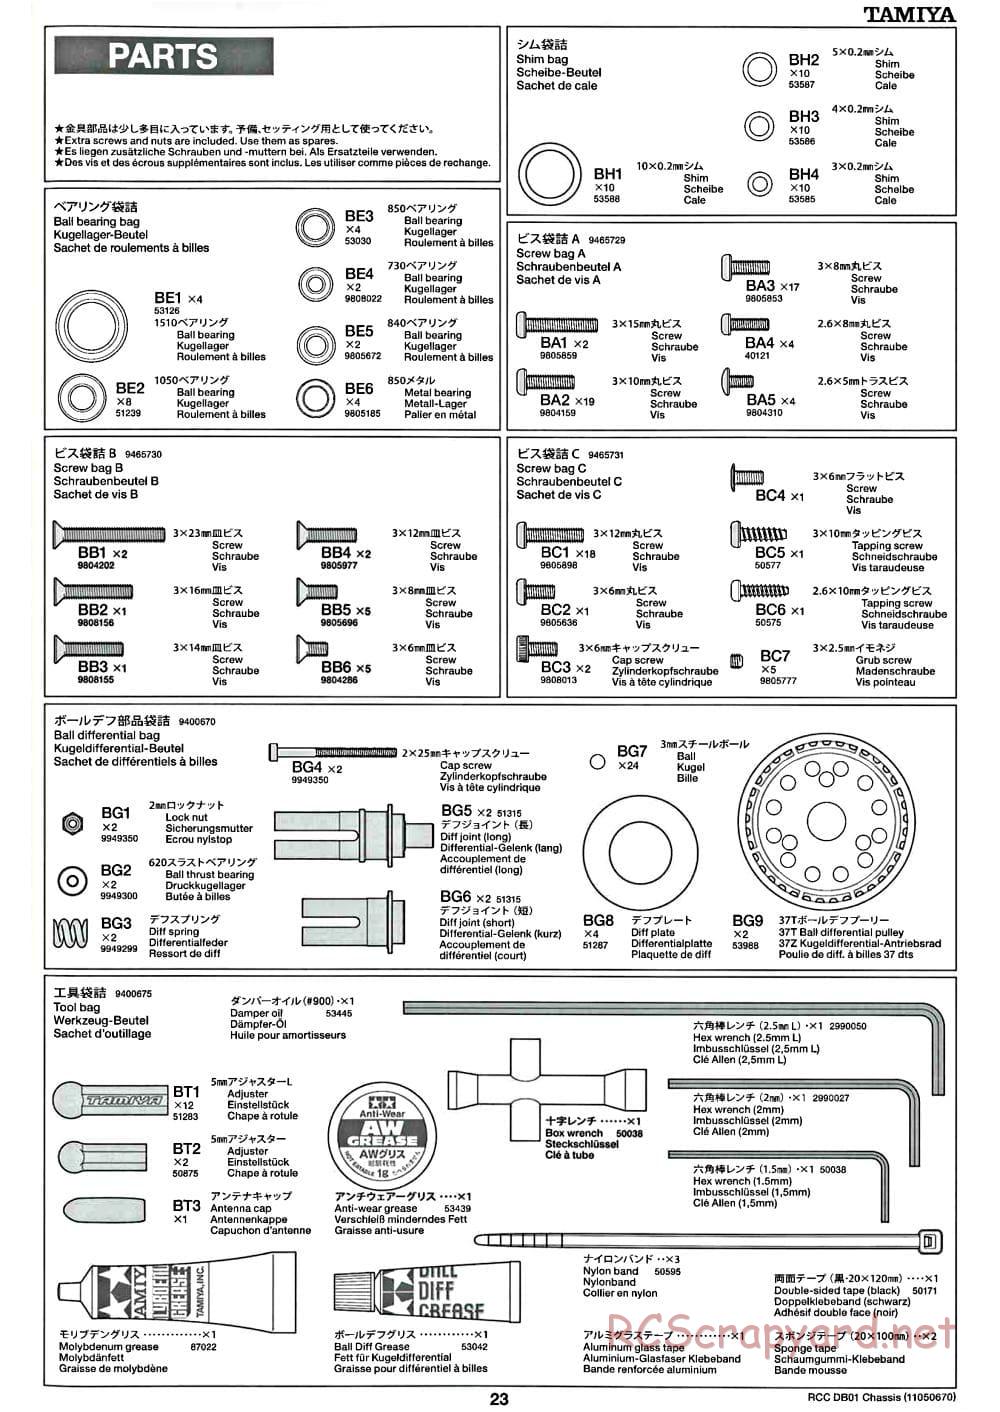 Tamiya - DB-01 Chassis - Manual - Page 23